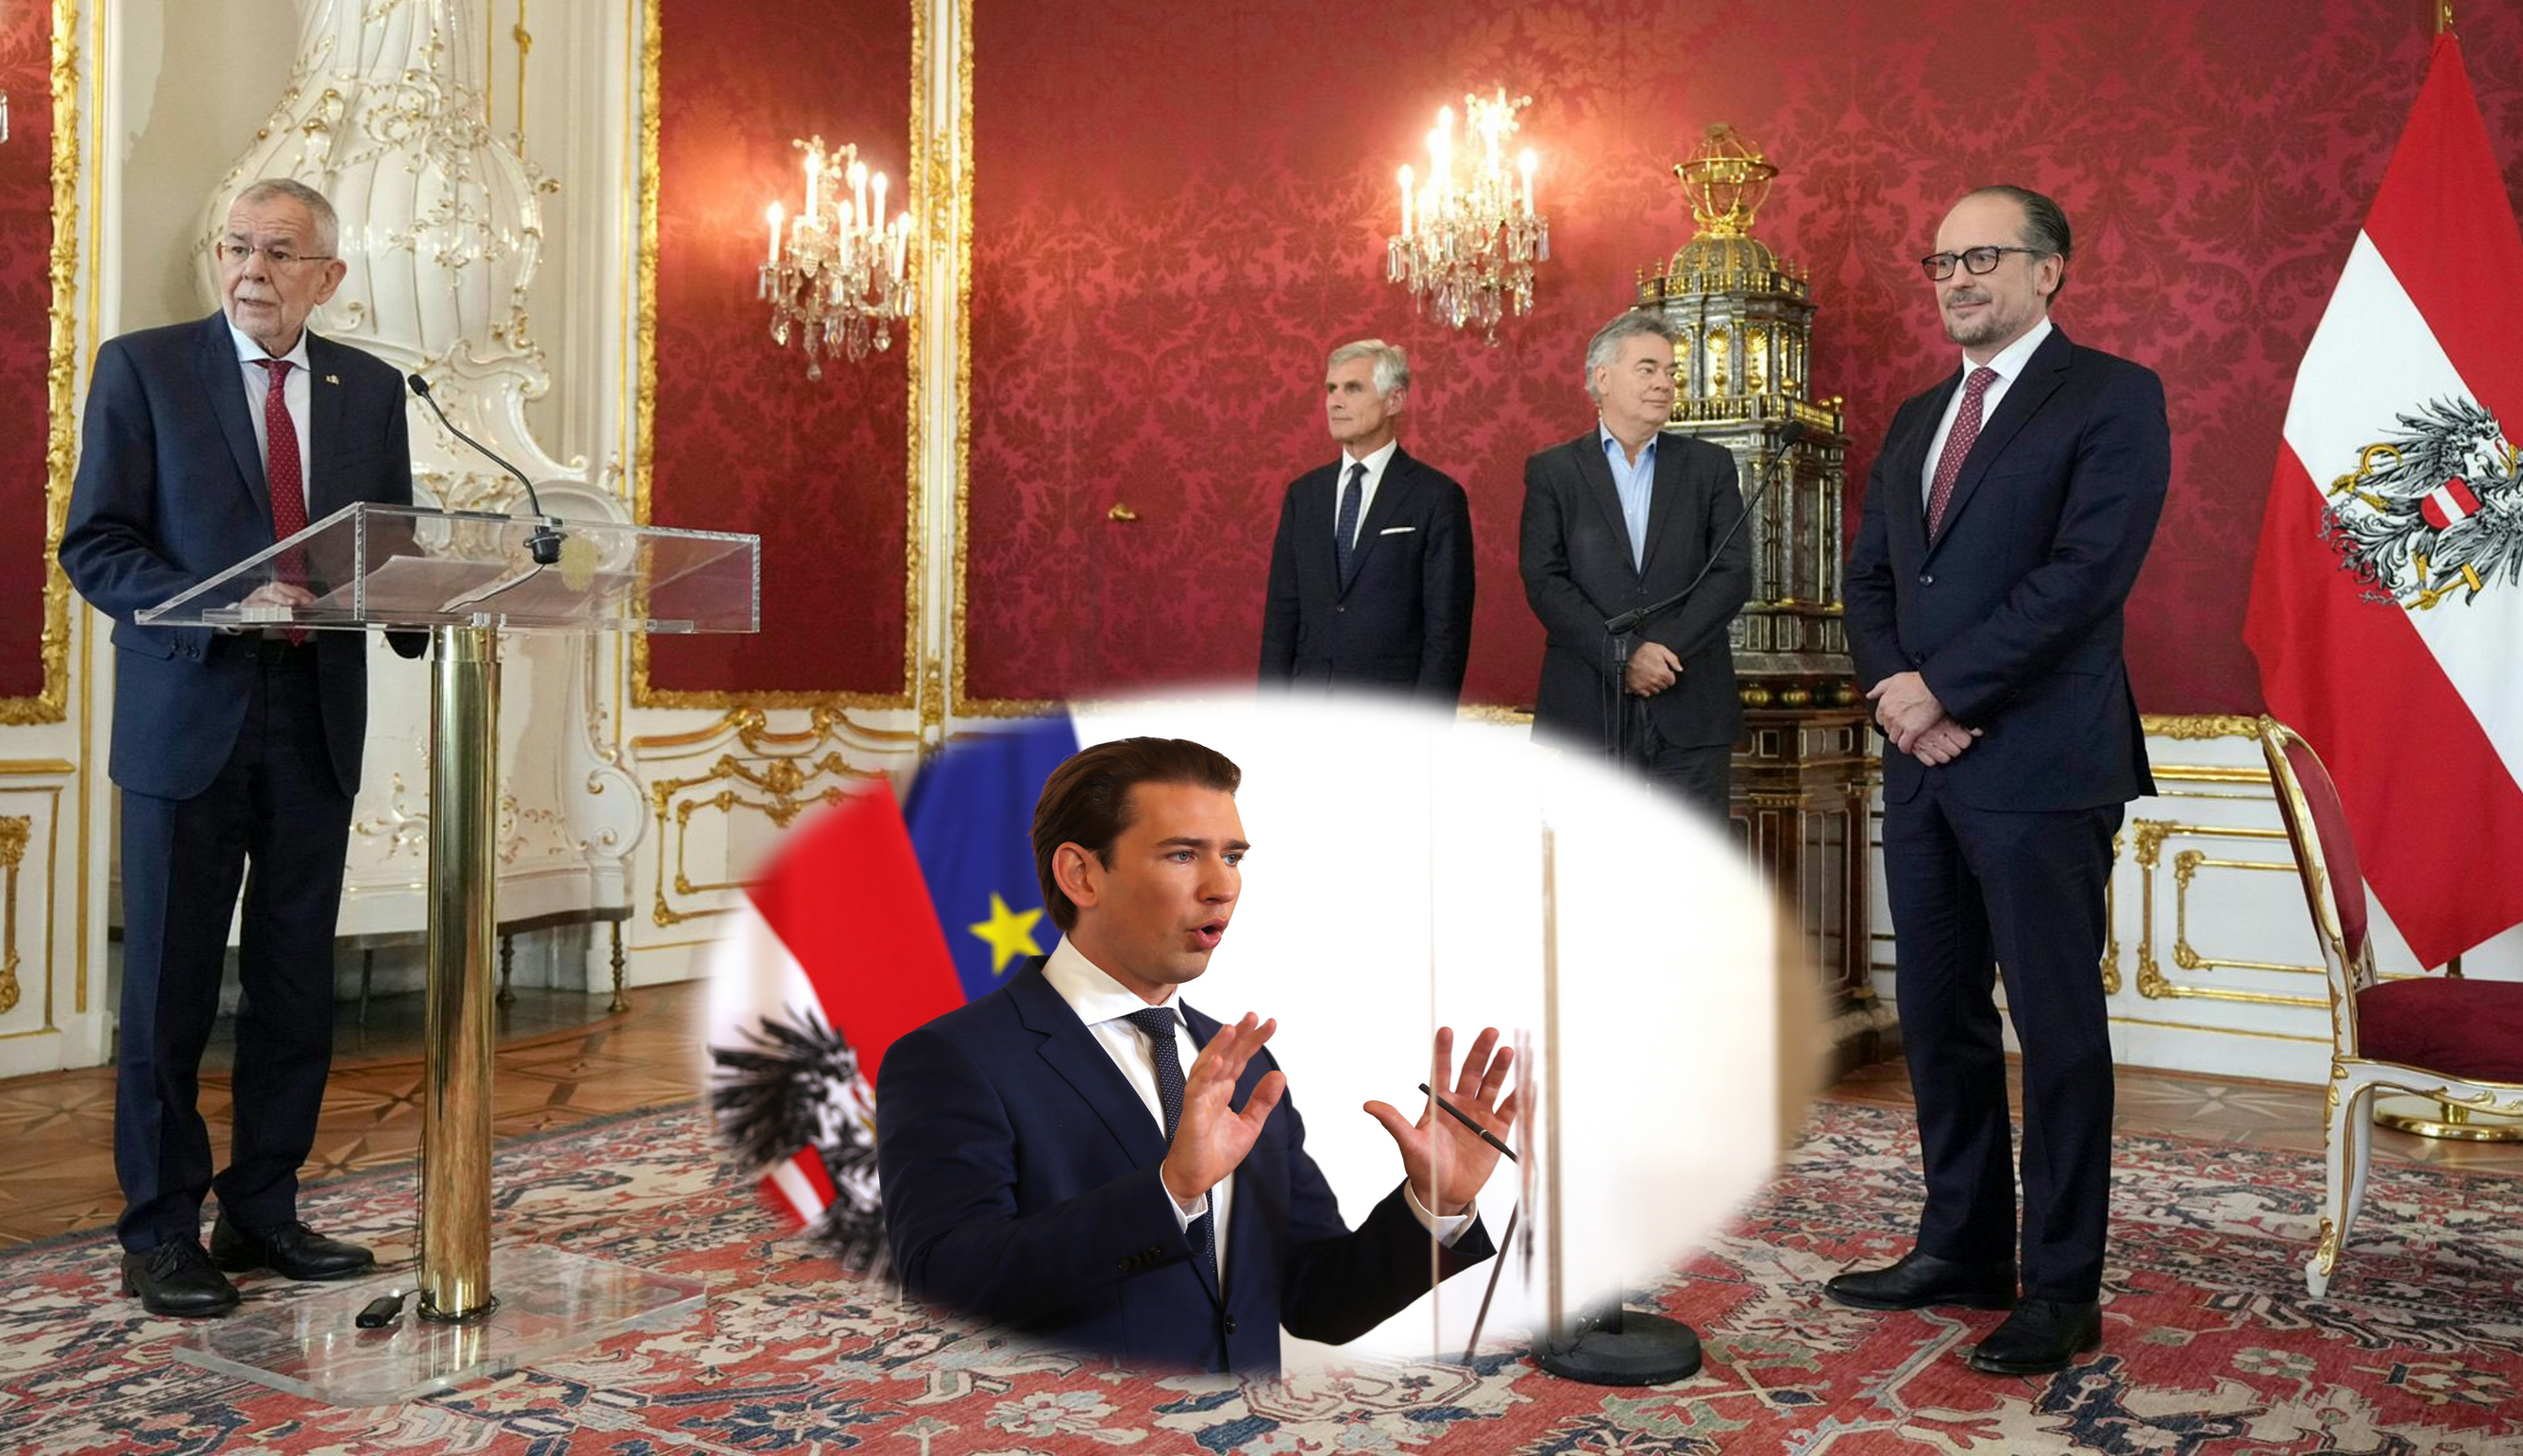 Președintele austriac numește un nou cancelar, după ce Sebastian Kurz a demisionat din cauza acuzațiilor de corupție